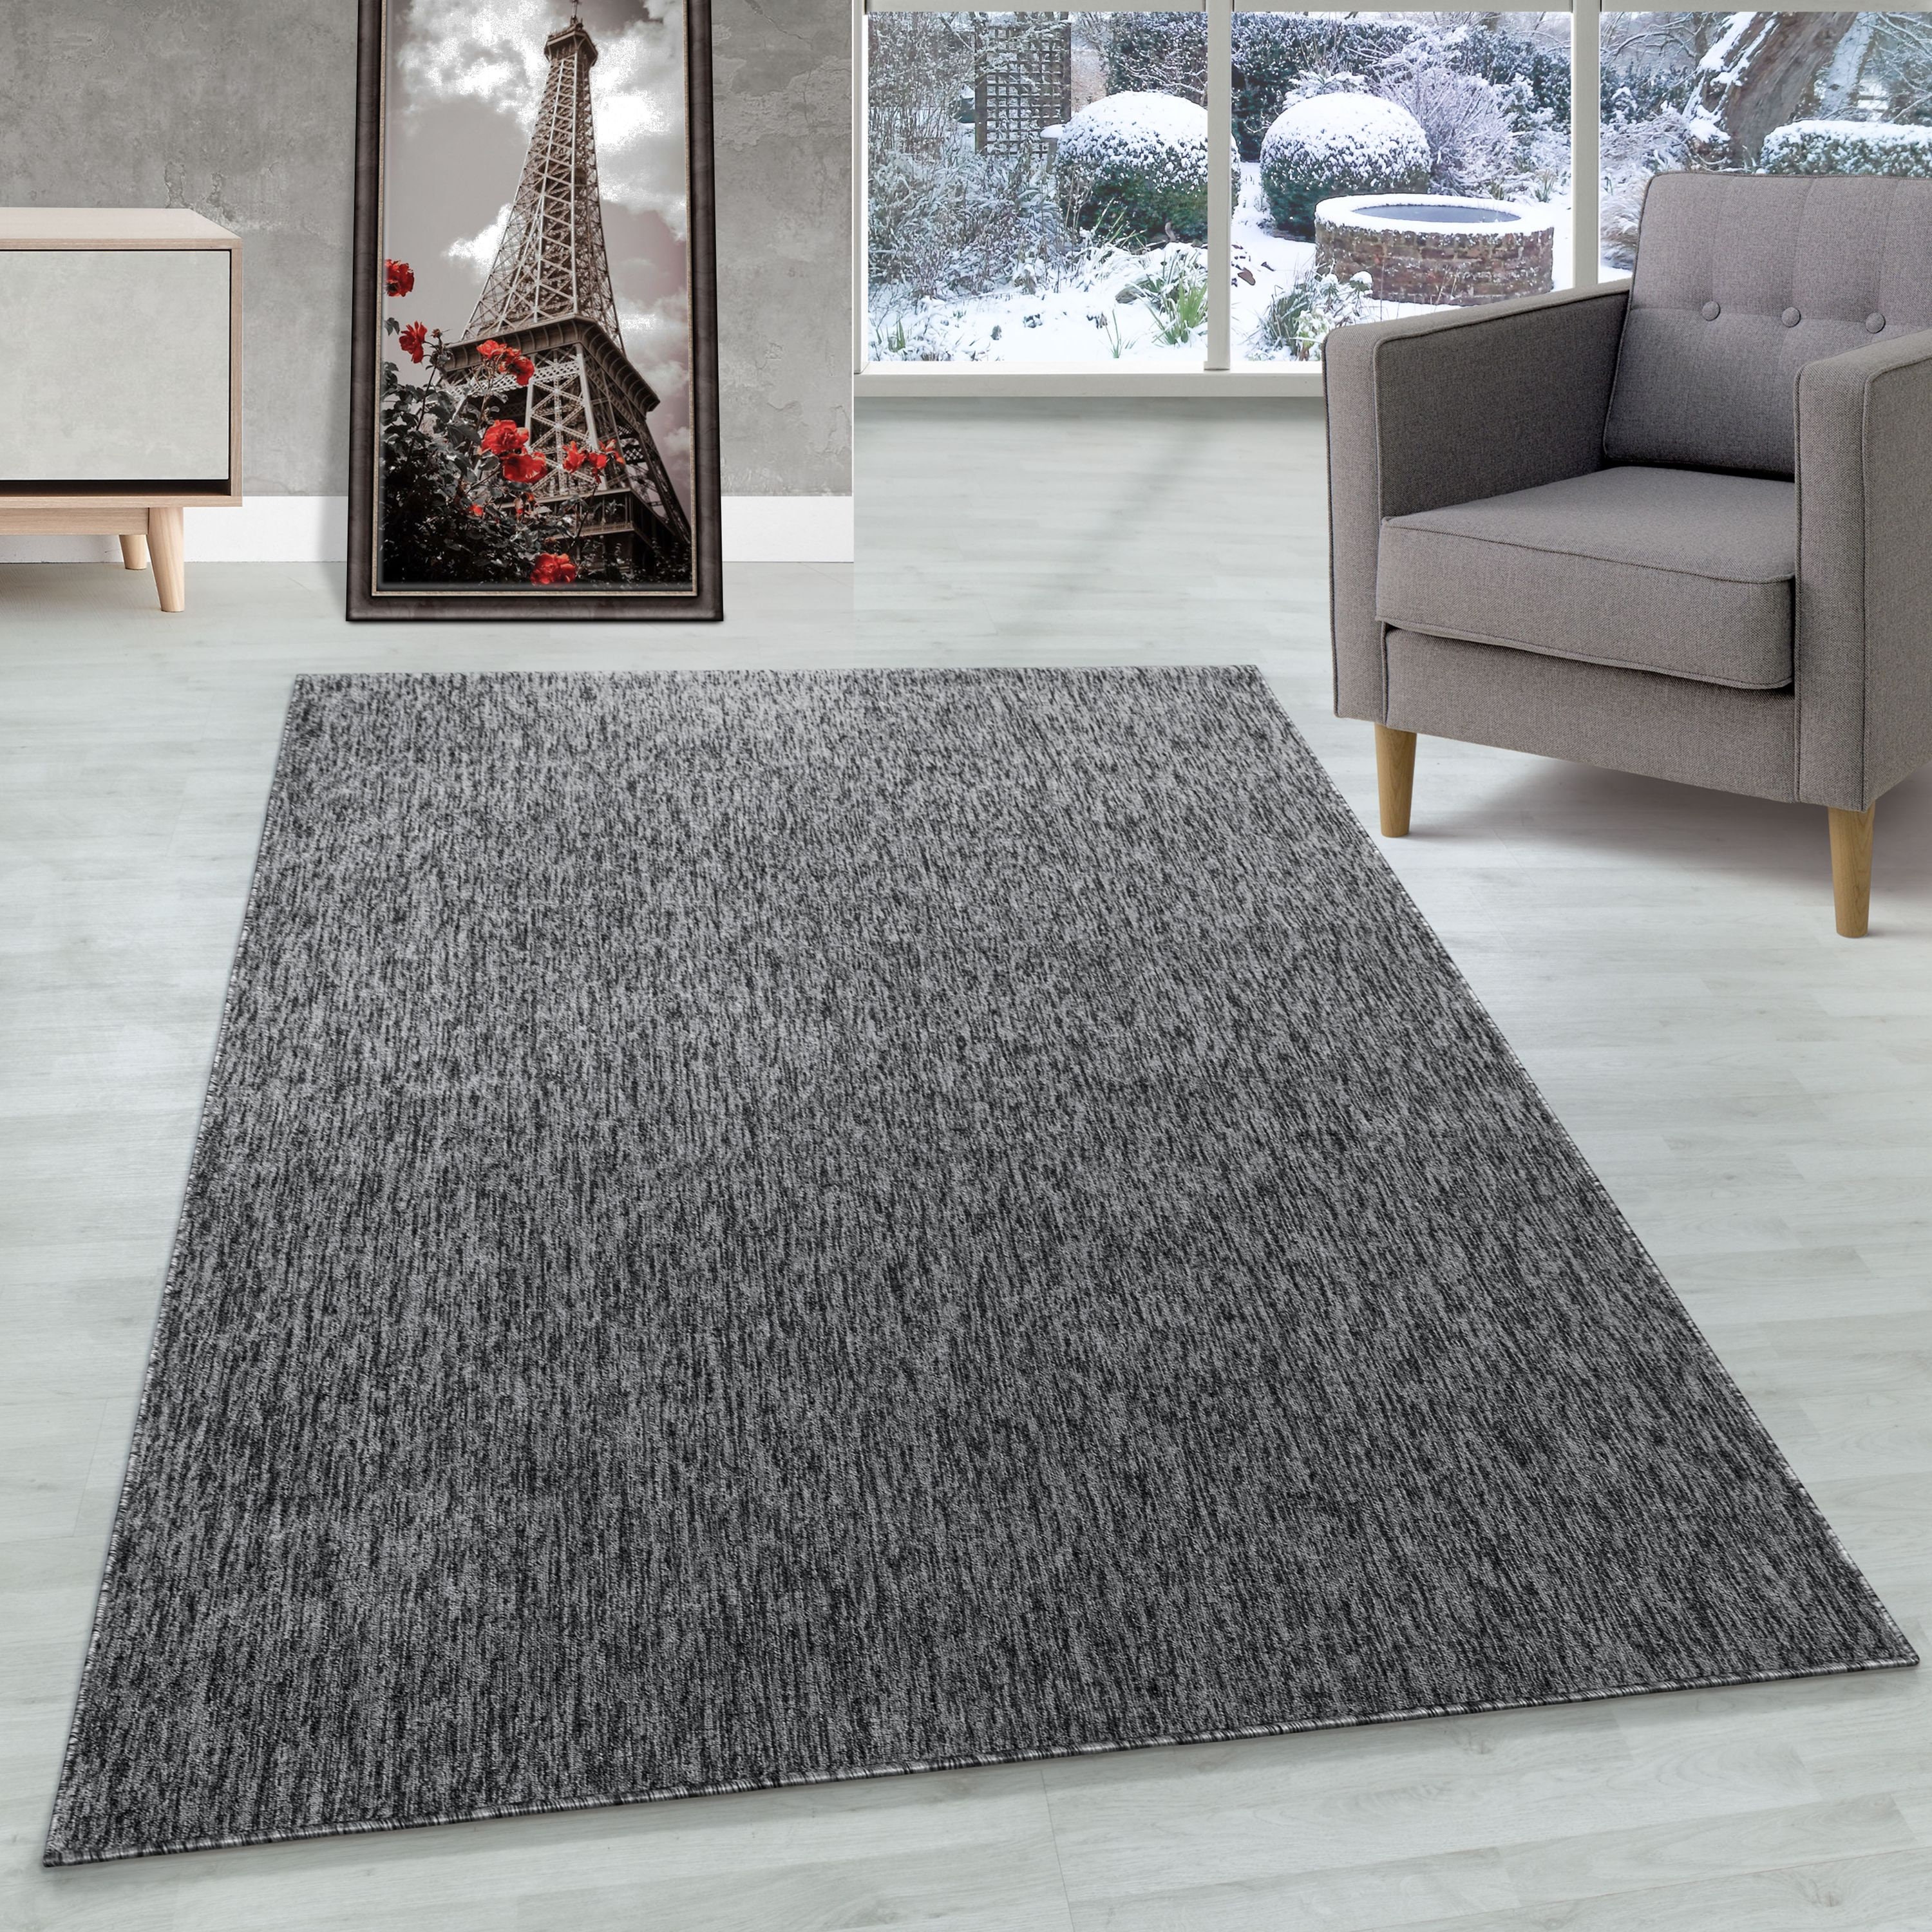 Short Pile Carpet Height 4mm Living Room Carpet Grey - Etsy